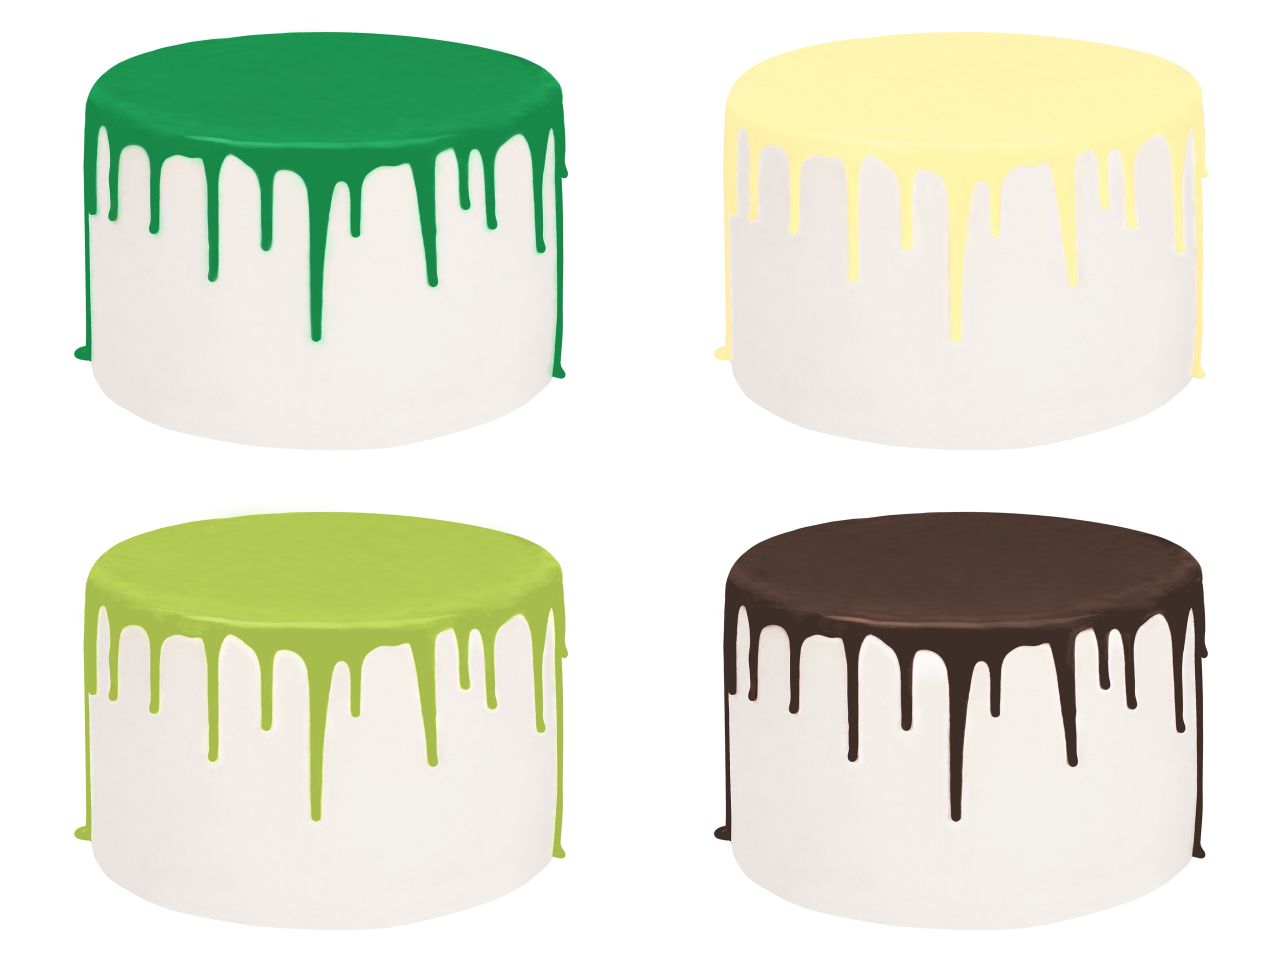 Drip Cake-Glasur Jungle Set, 4 Farben, inkl. Spritzflasche, 4 x 250 g